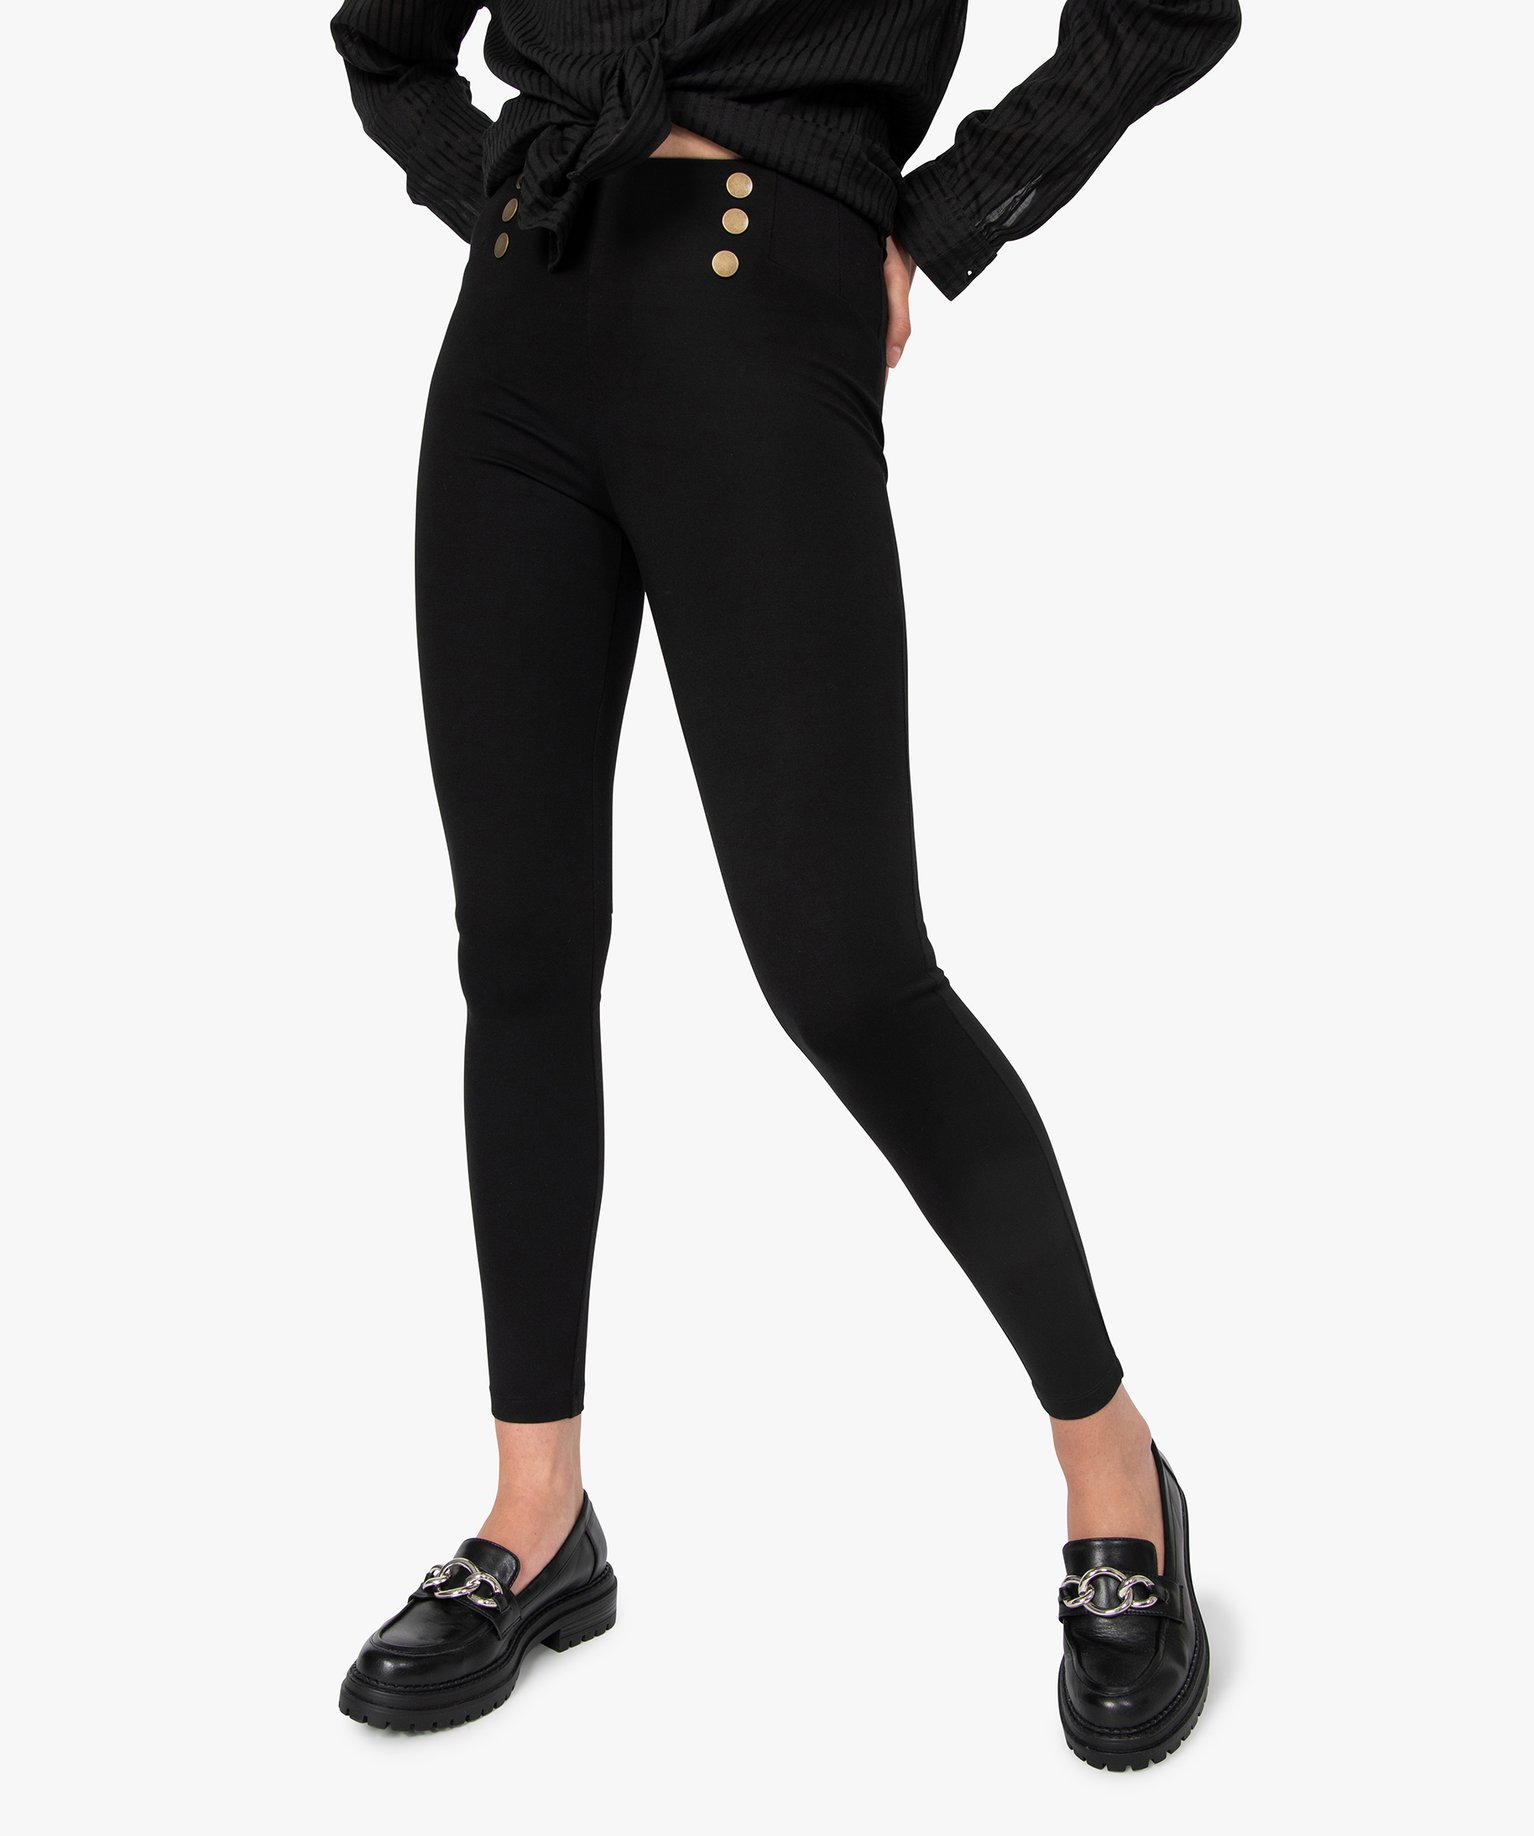 leggings femme avec boutons fantaisie a la taille noir leggings et jeggings